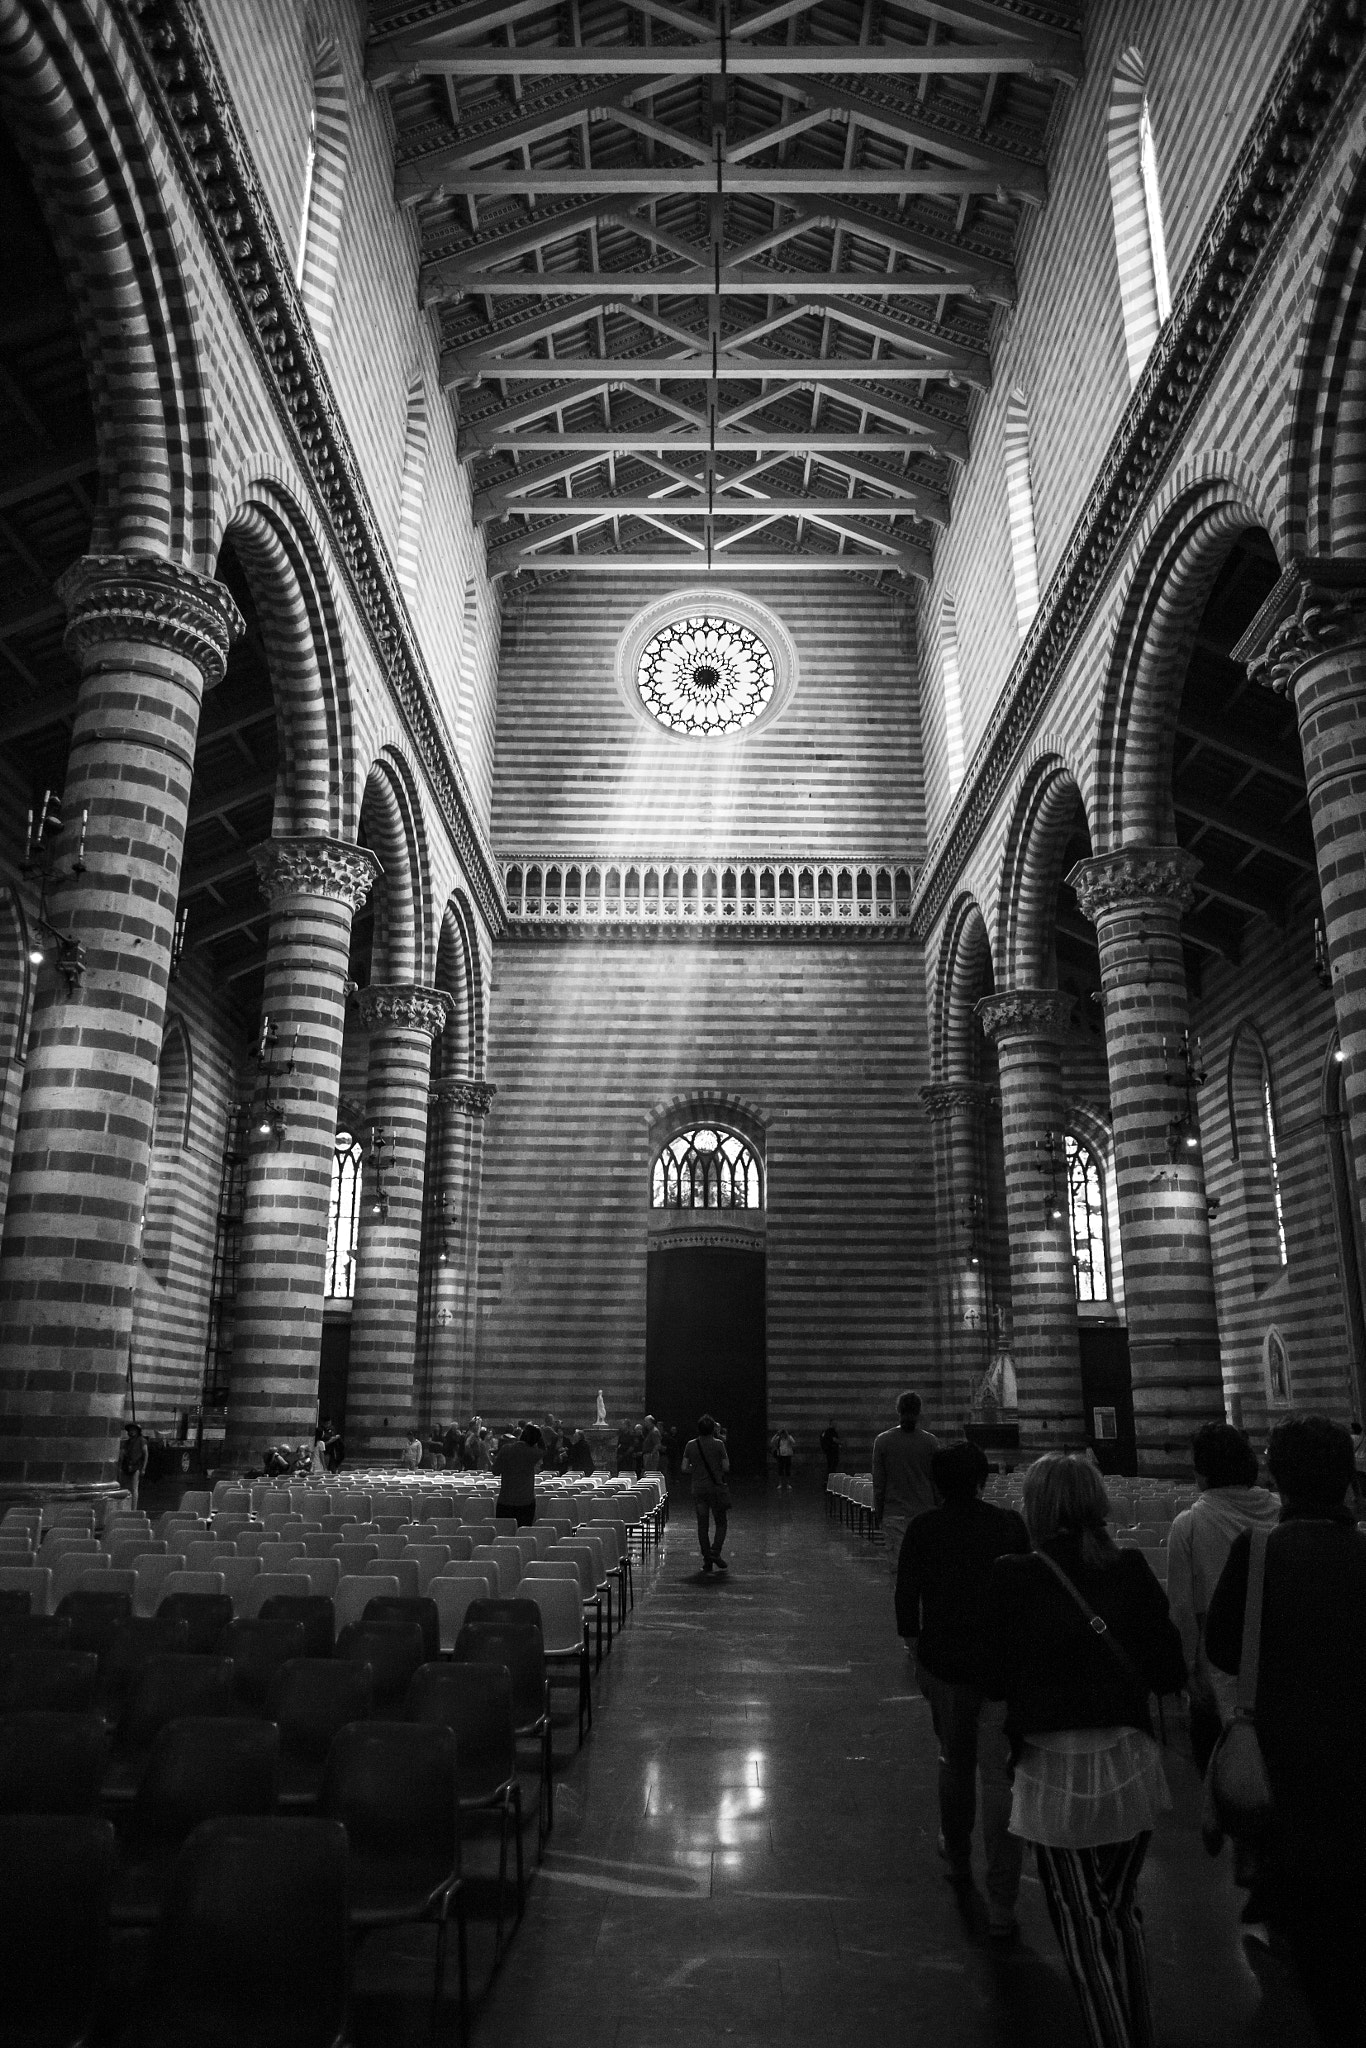 Canon EOS-1Ds Mark II + Canon EF 24mm F2.8 sample photo. Duomo di orvieto - umbria photography